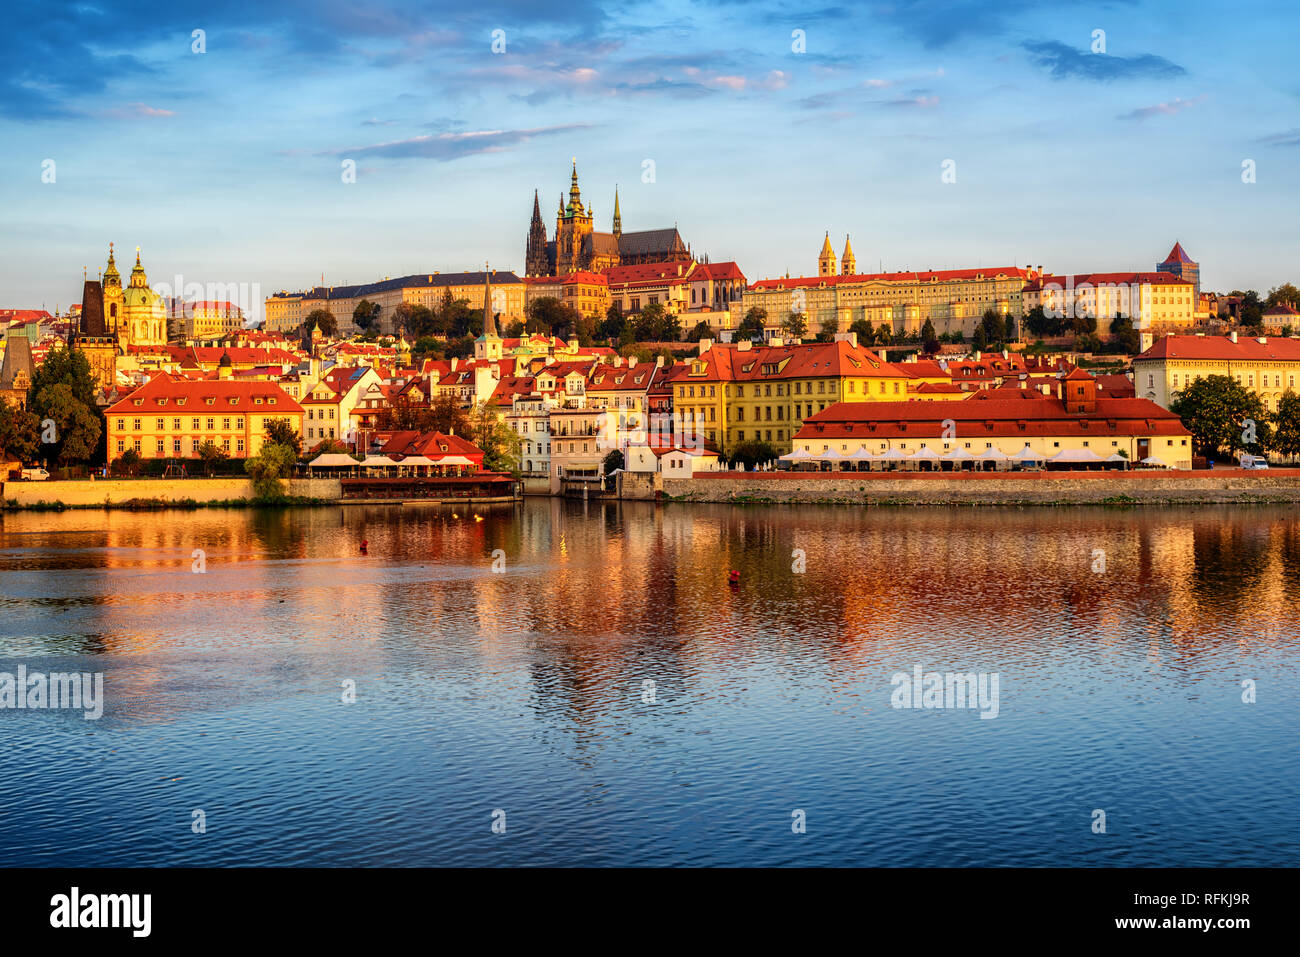 La vieille ville de Prague, Habour et du château de Prague, République tchèque, reflétant dans la rivière Vltava sur Sunrise Banque D'Images